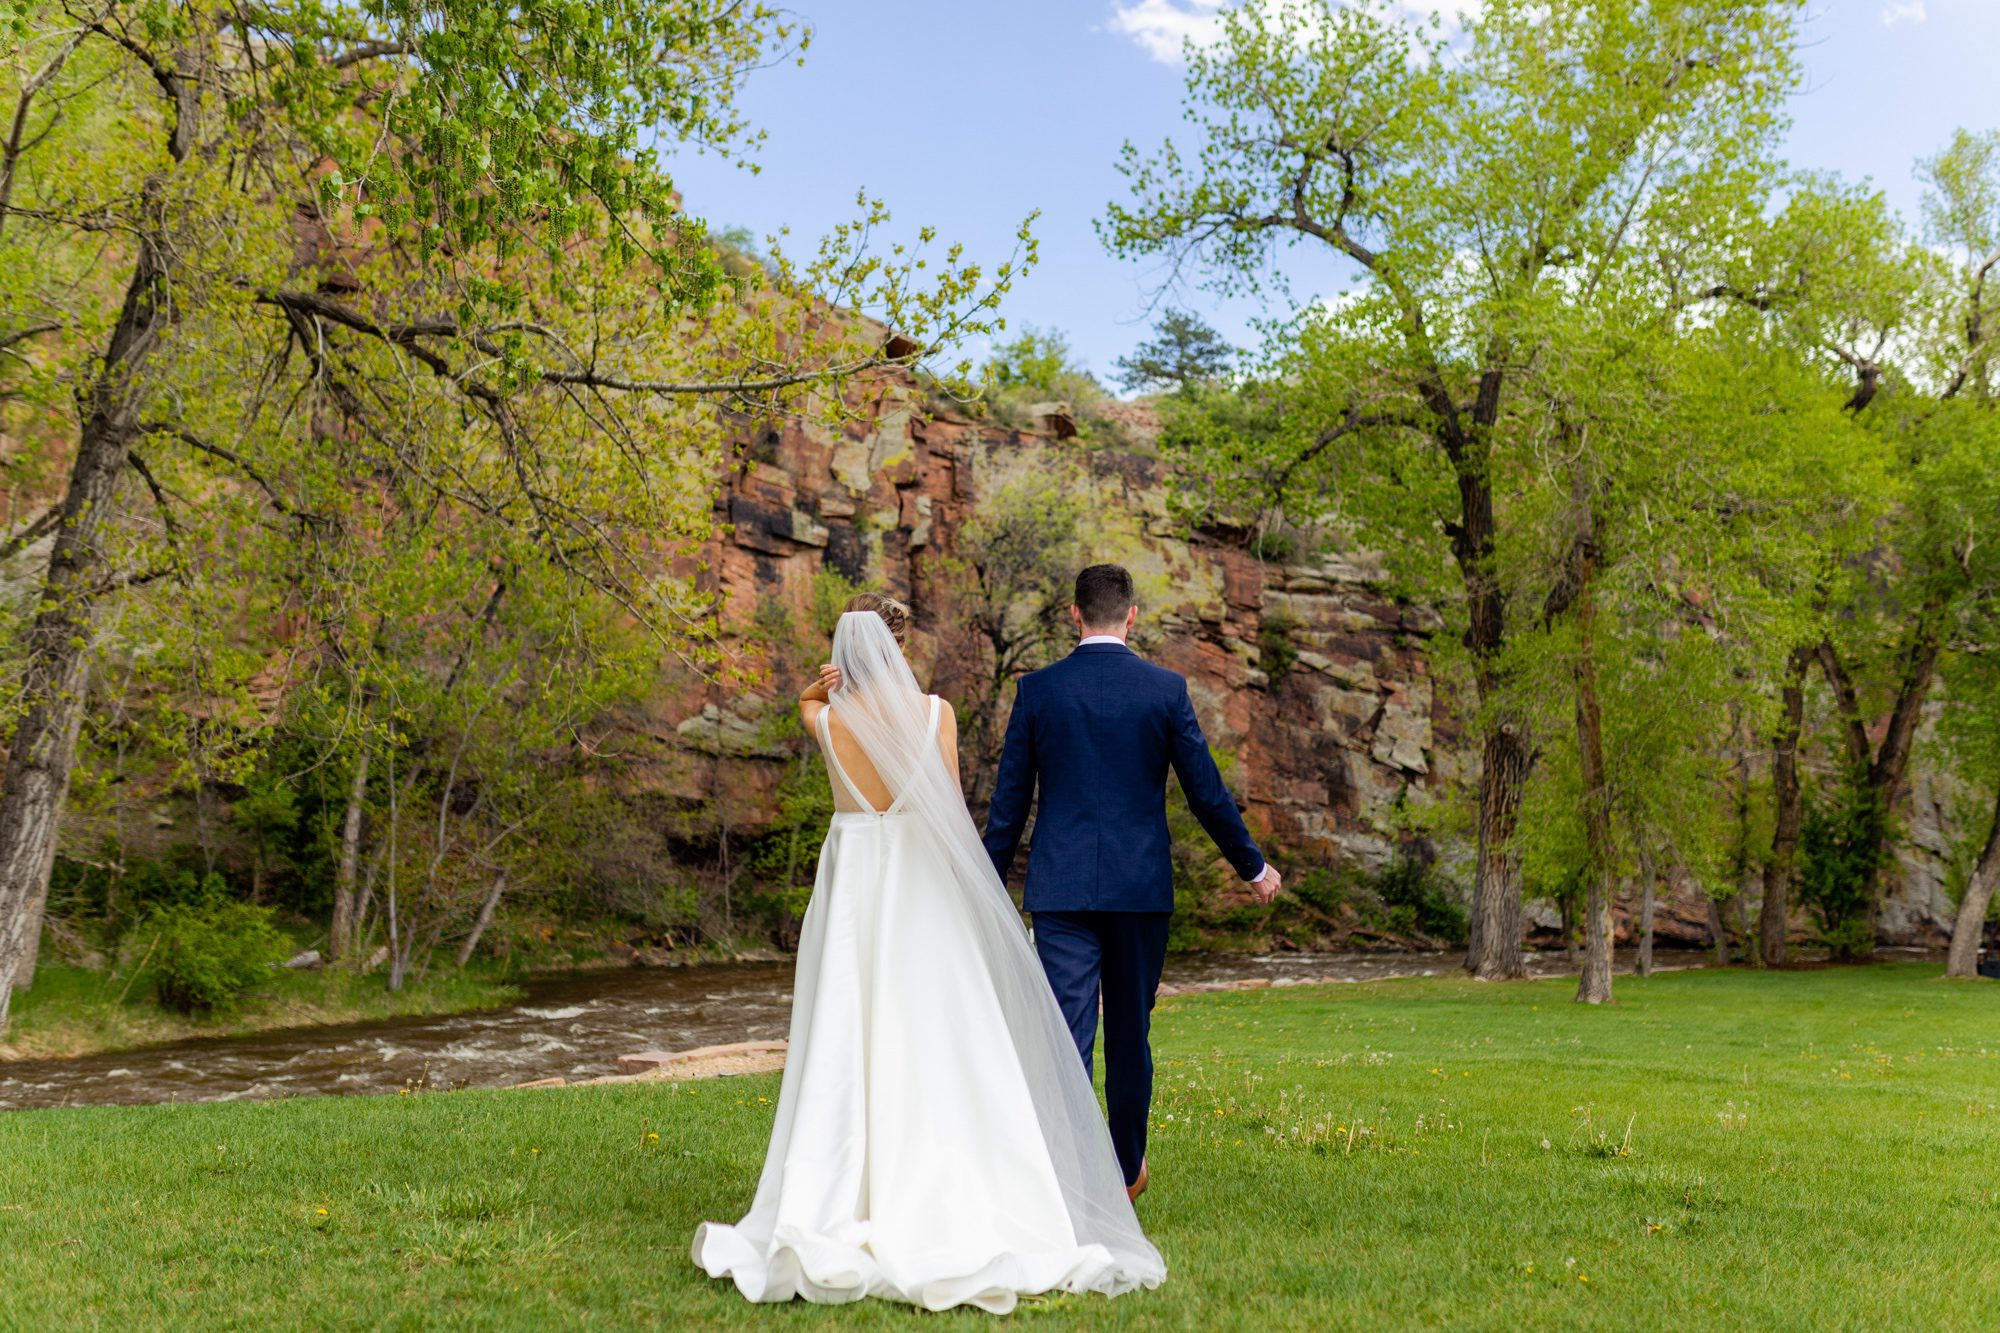 Planet Bluegrass Wedding venue in Lyons Colorado: Colorado Wedding Photographer, Bride and Groom portraits, Wedding photography, Wedding poses